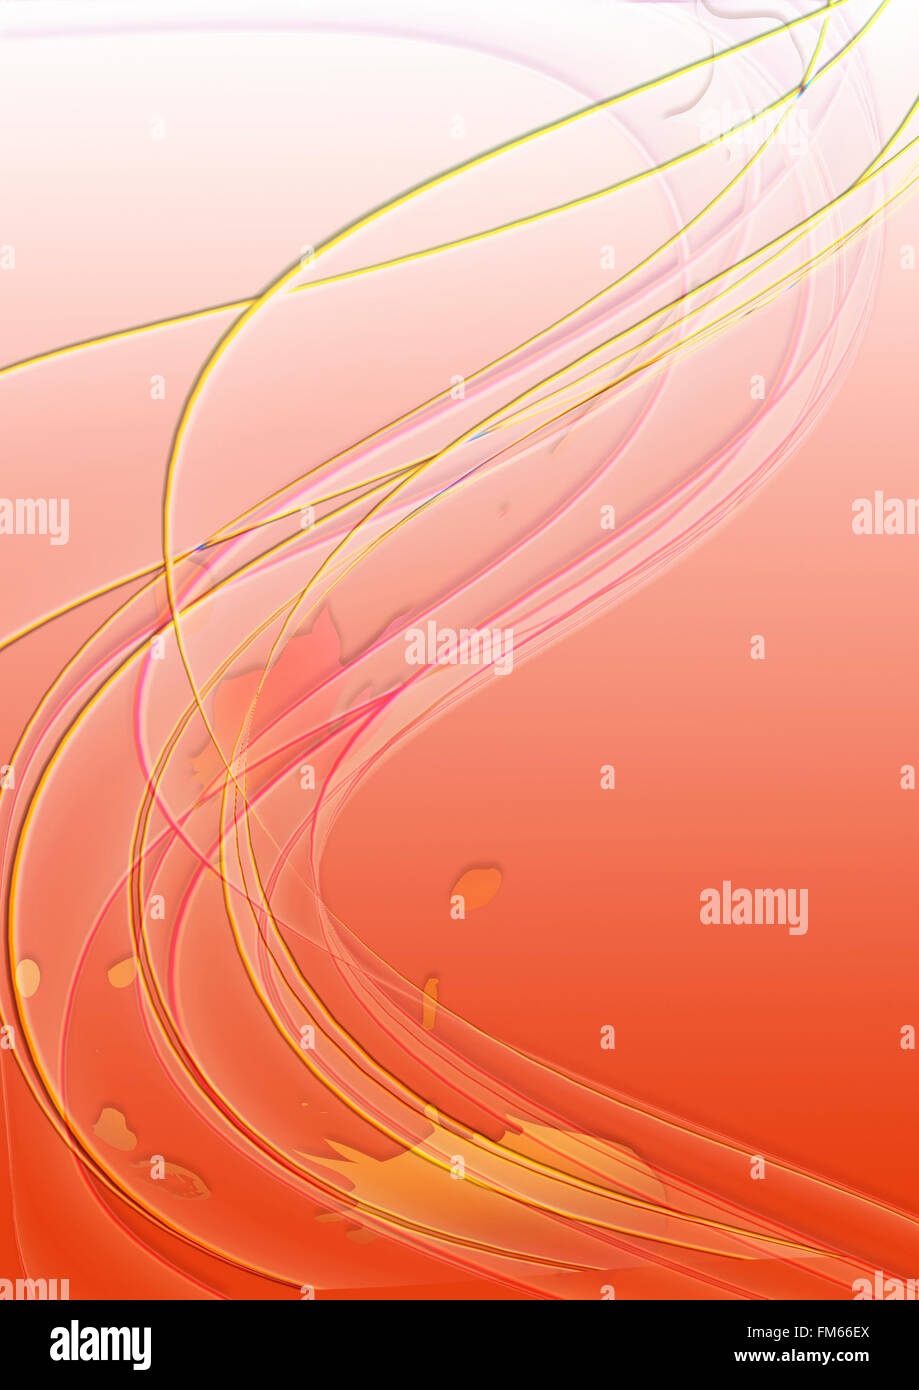 Transparente Wellen und dünne Streifen auf orangem Hintergrund Stockfoto